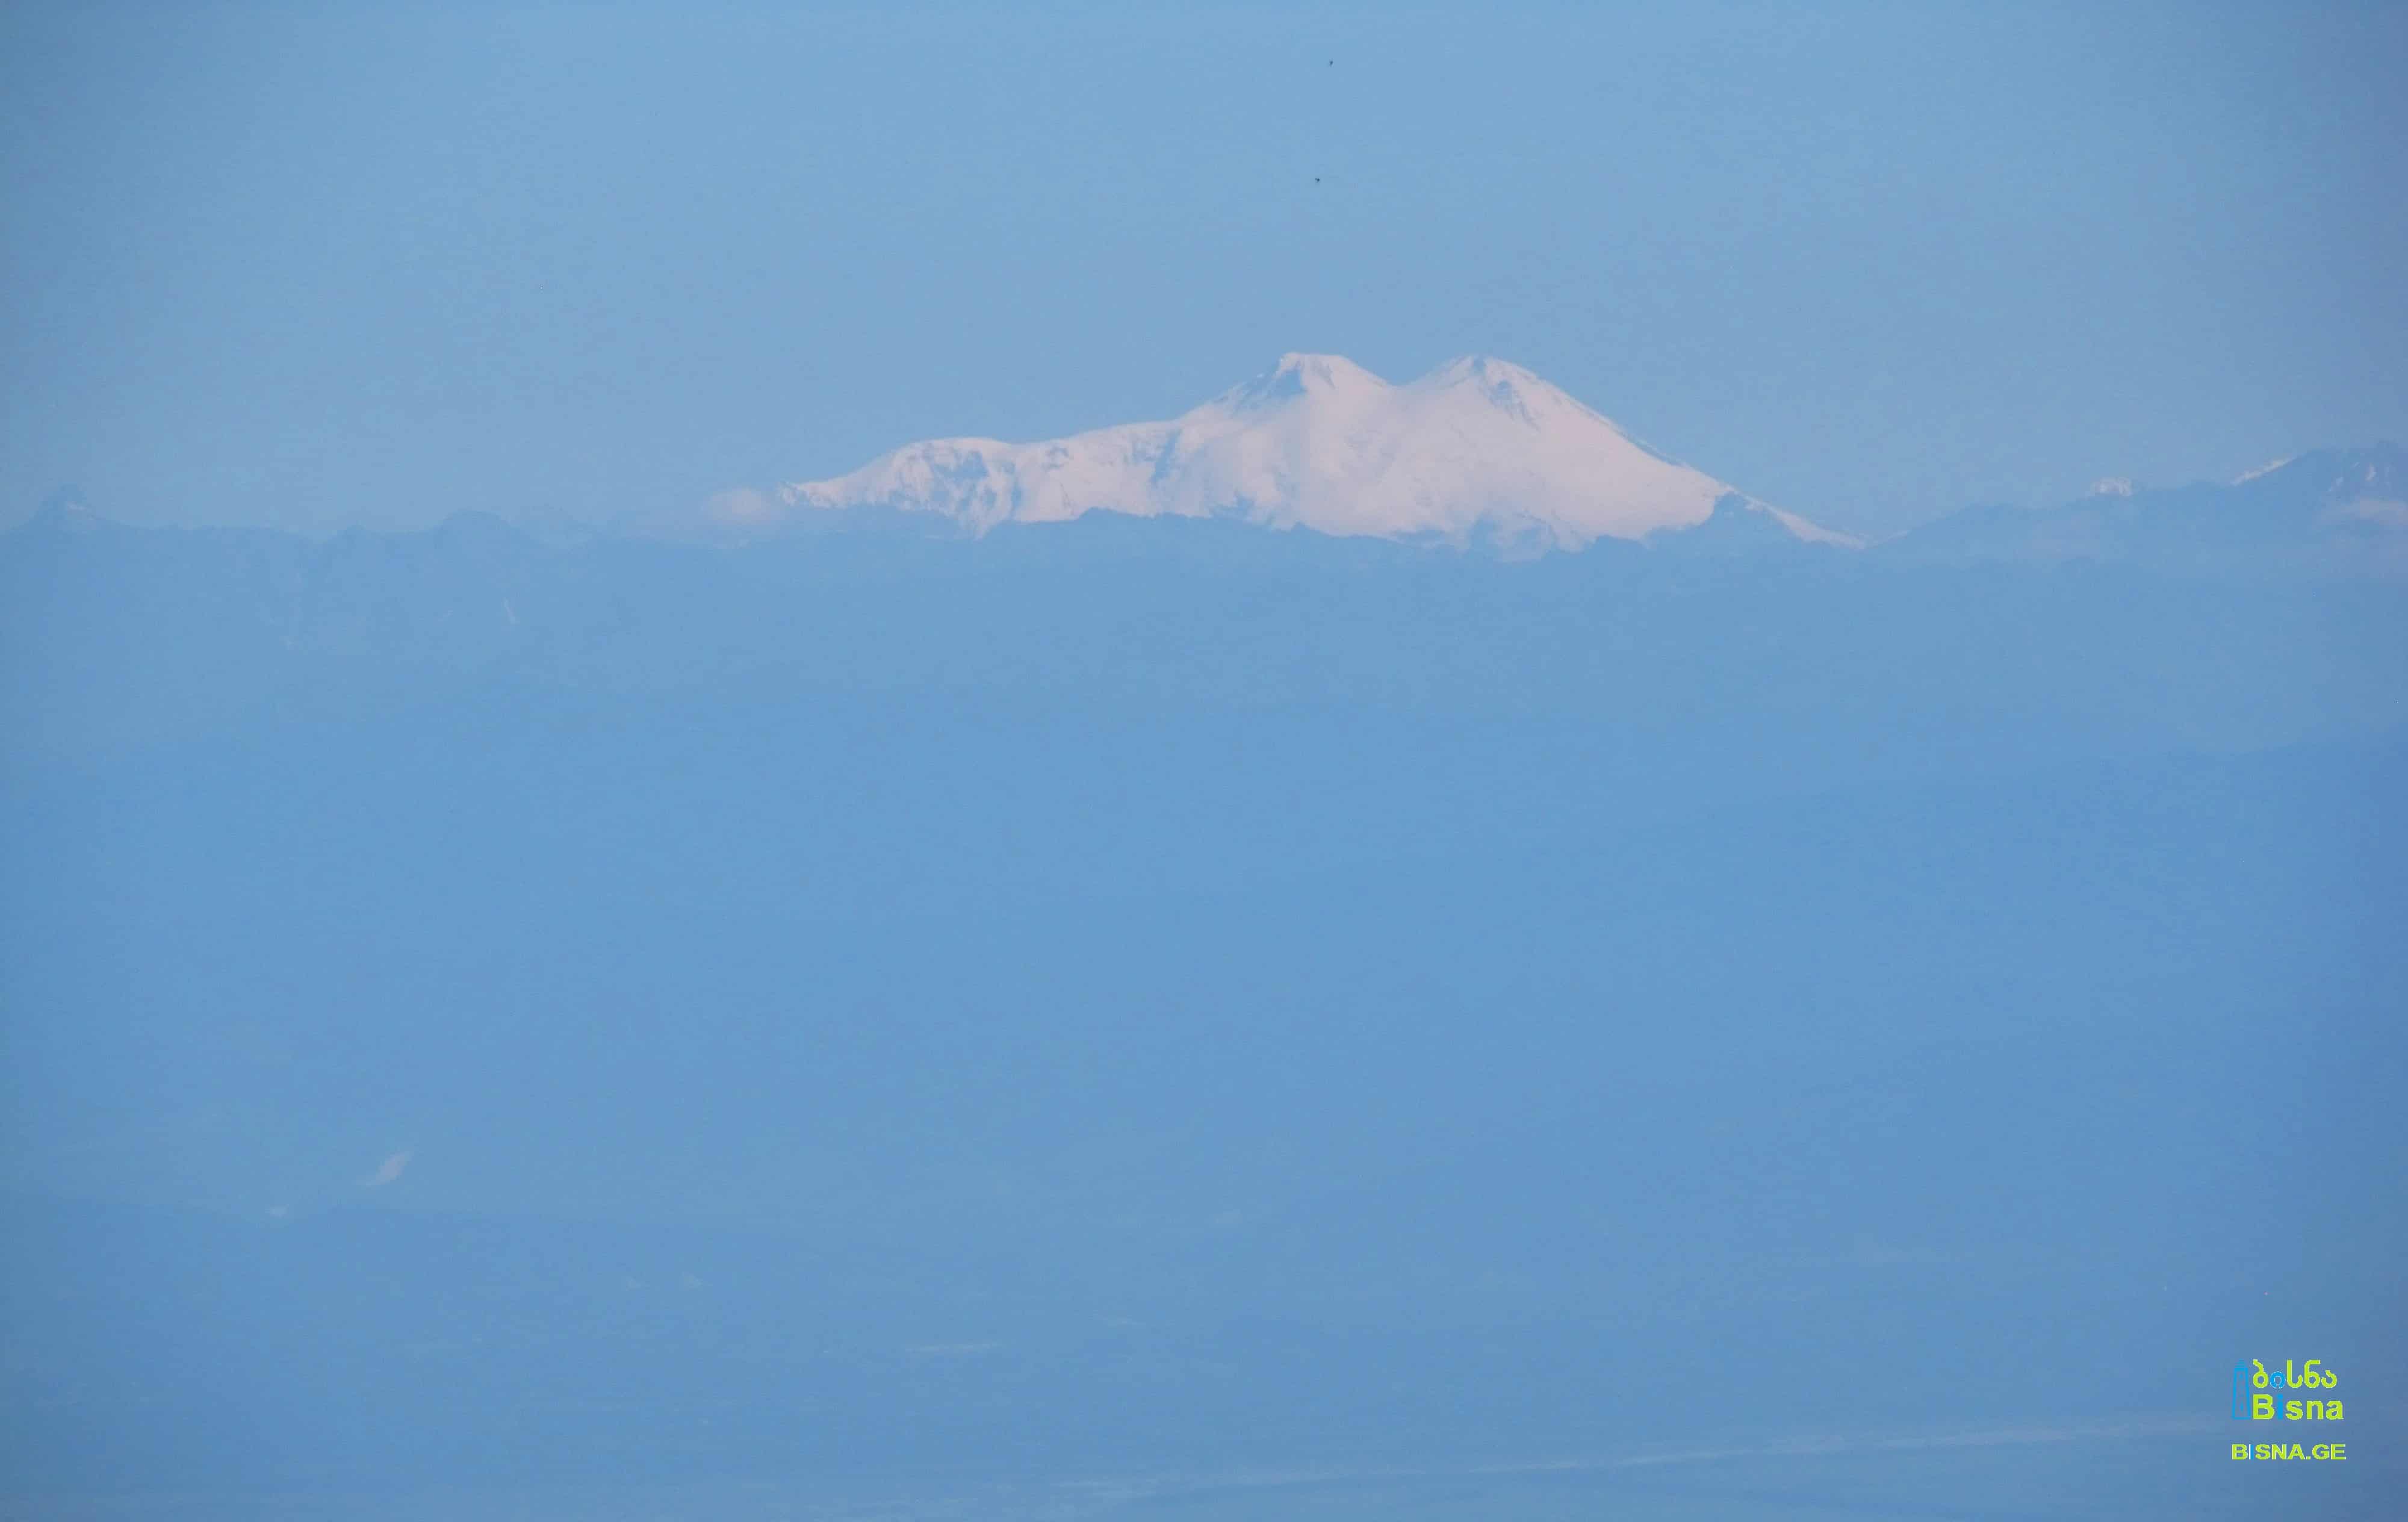 Mt. Elbrus (5642 m / 18510 ft, the highest peak of Europe) seen from Bakhmaro